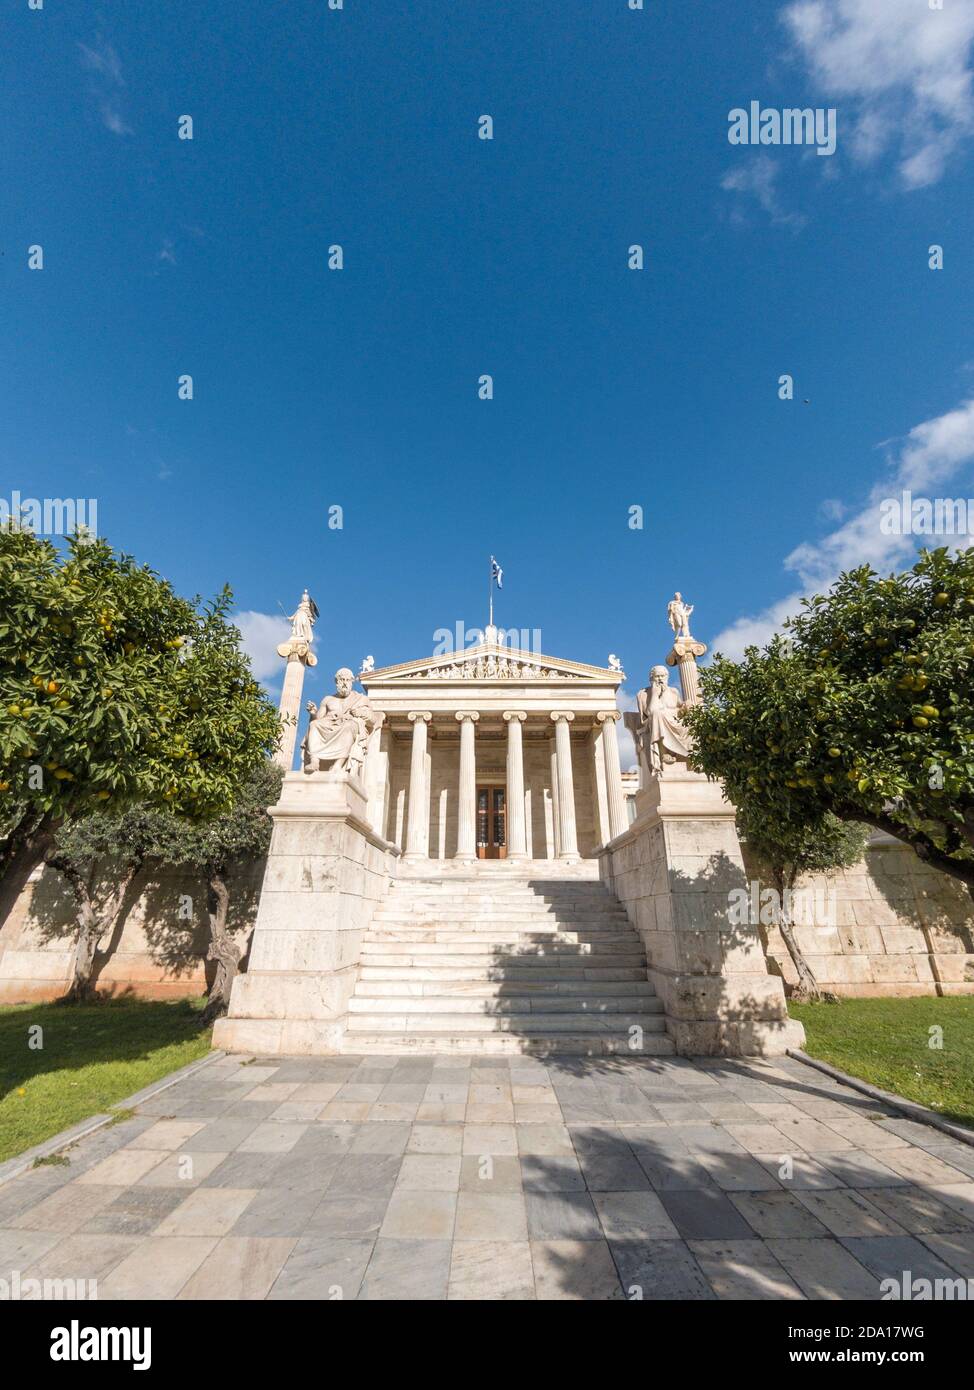 Accademia di Atene, un capolavoro architettonico costruito nel 1885 dagli architetti Ernst Ziller e Theo Hansen. Foto Stock